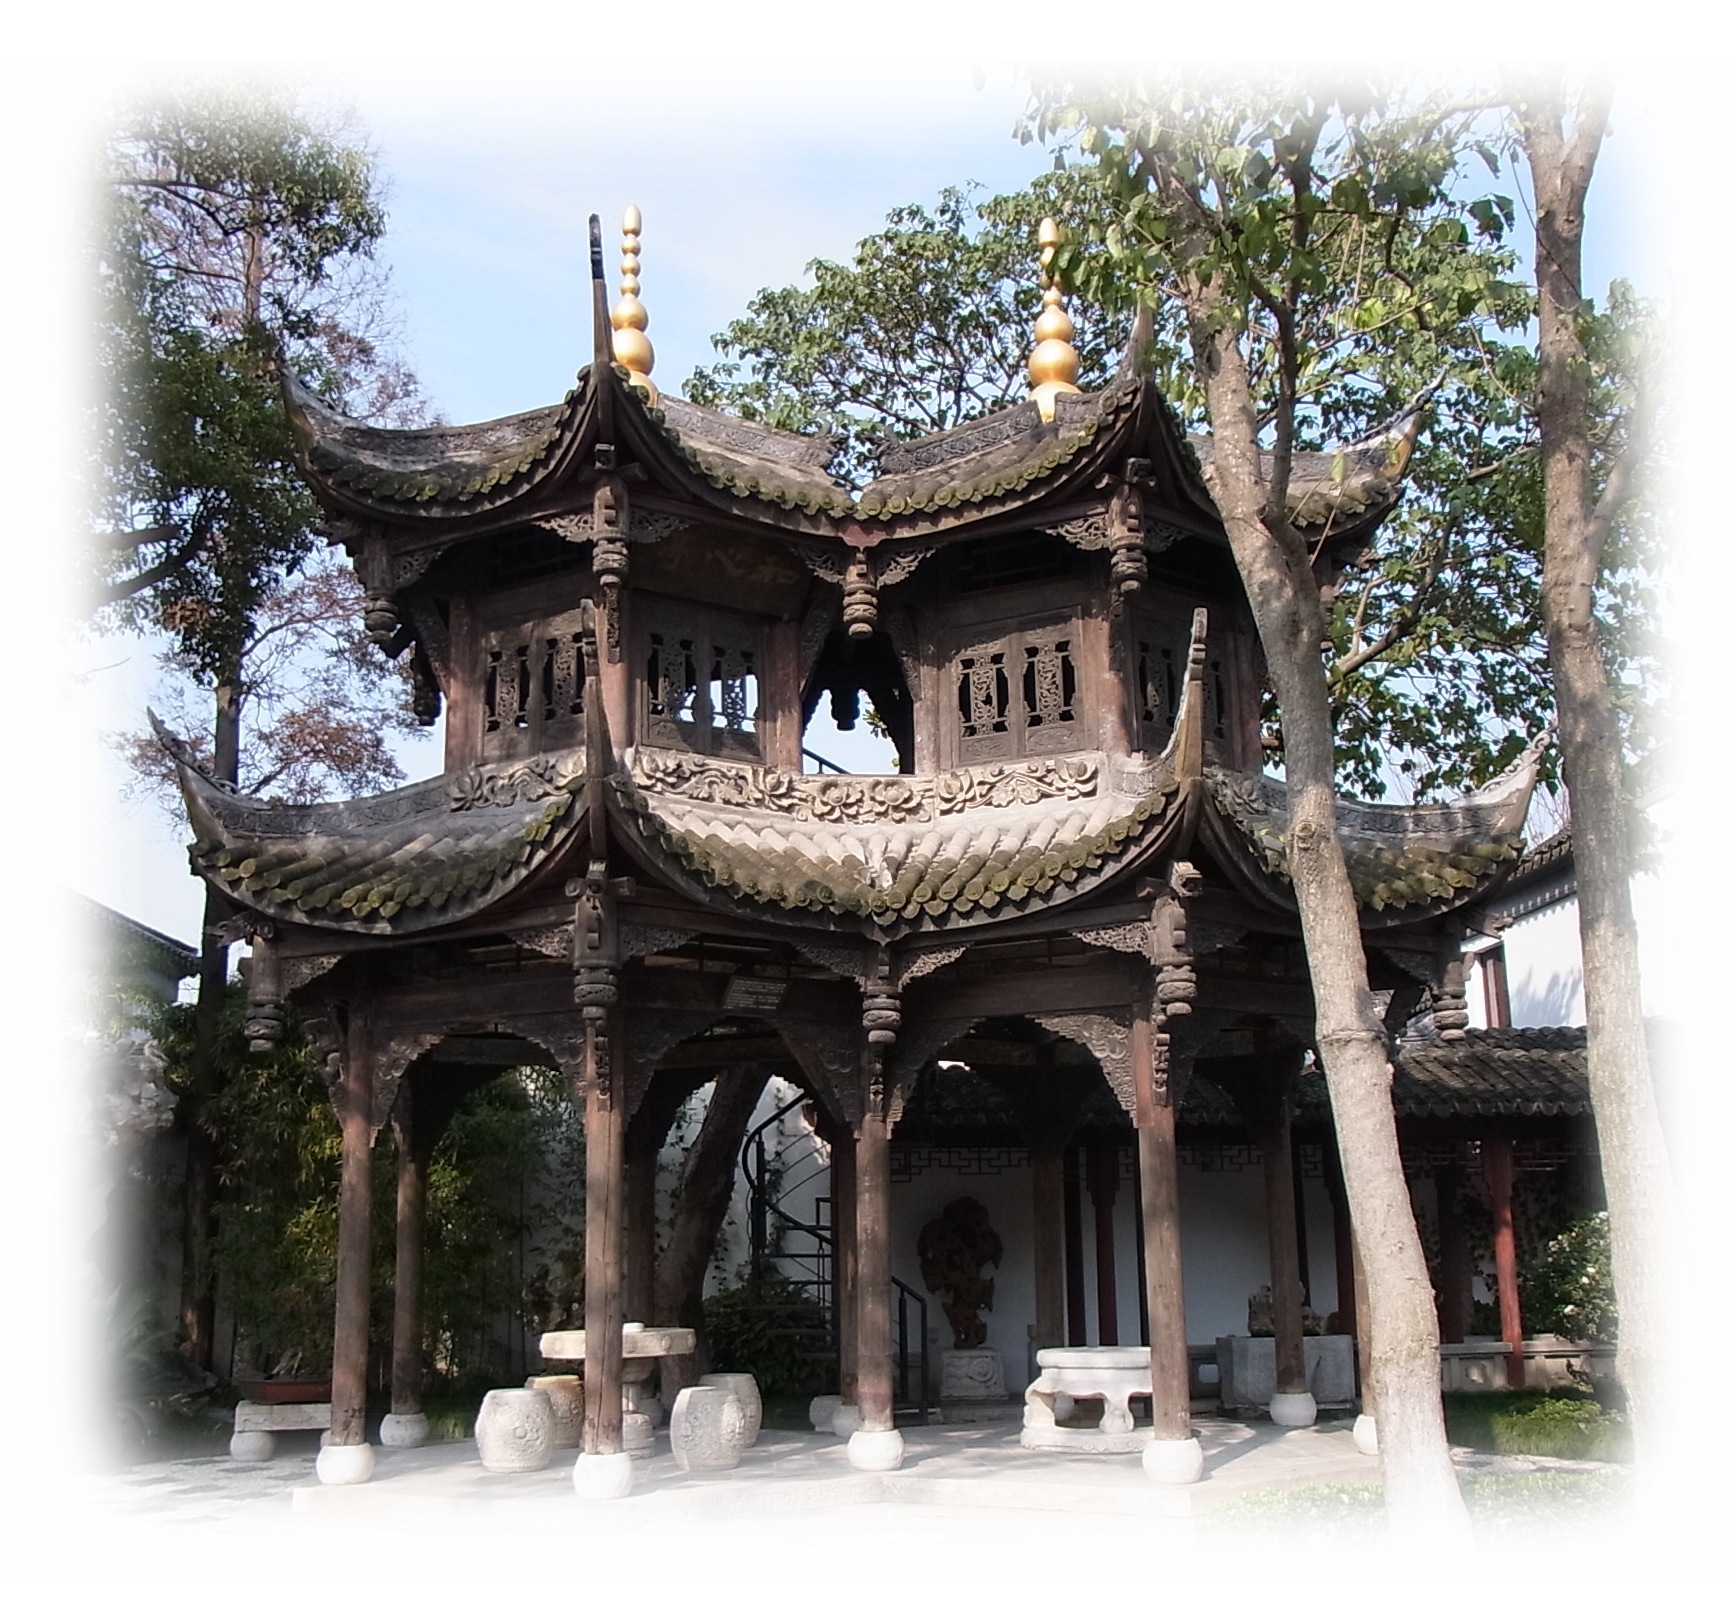 Pavilion of the gardenn in Zhujiajiao, a water town outskirts of Shanghai